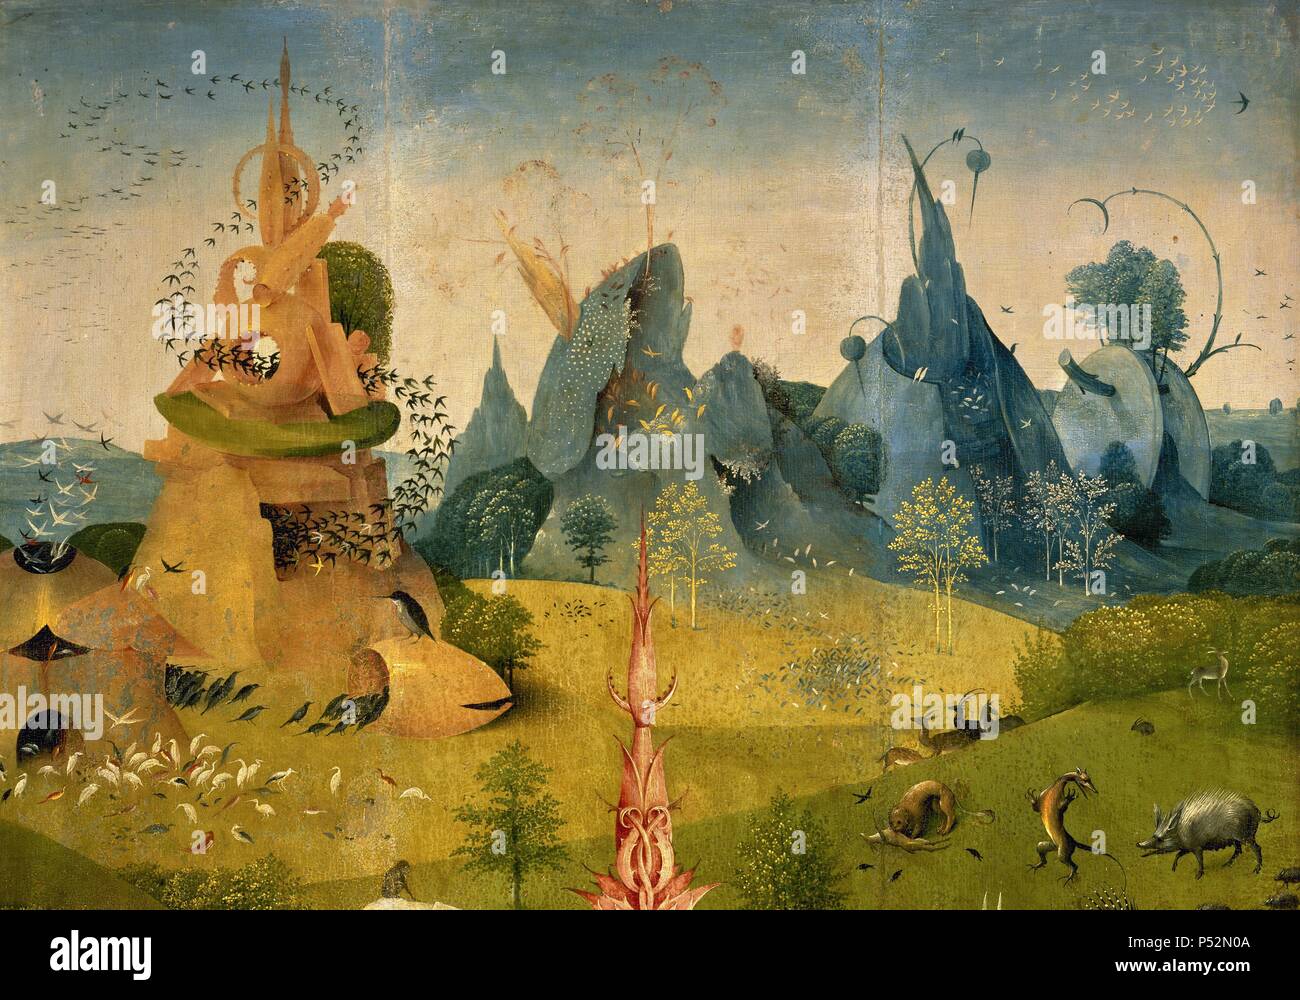 ARTE RENACIMIENTO. HOLANDA. Aeken Bosch, Hieronymus Bosch o "El Bosco"  (Bois-le-Duc,1450-Bois-le-Duc,1516). Pintor y grabador neerlandés,  perteneciente a la "Escuela Flamenca". 'EL JARDÍN DE LAS DELICIAS O LA  PINTURA DEL MADROÑO". Tríptico en